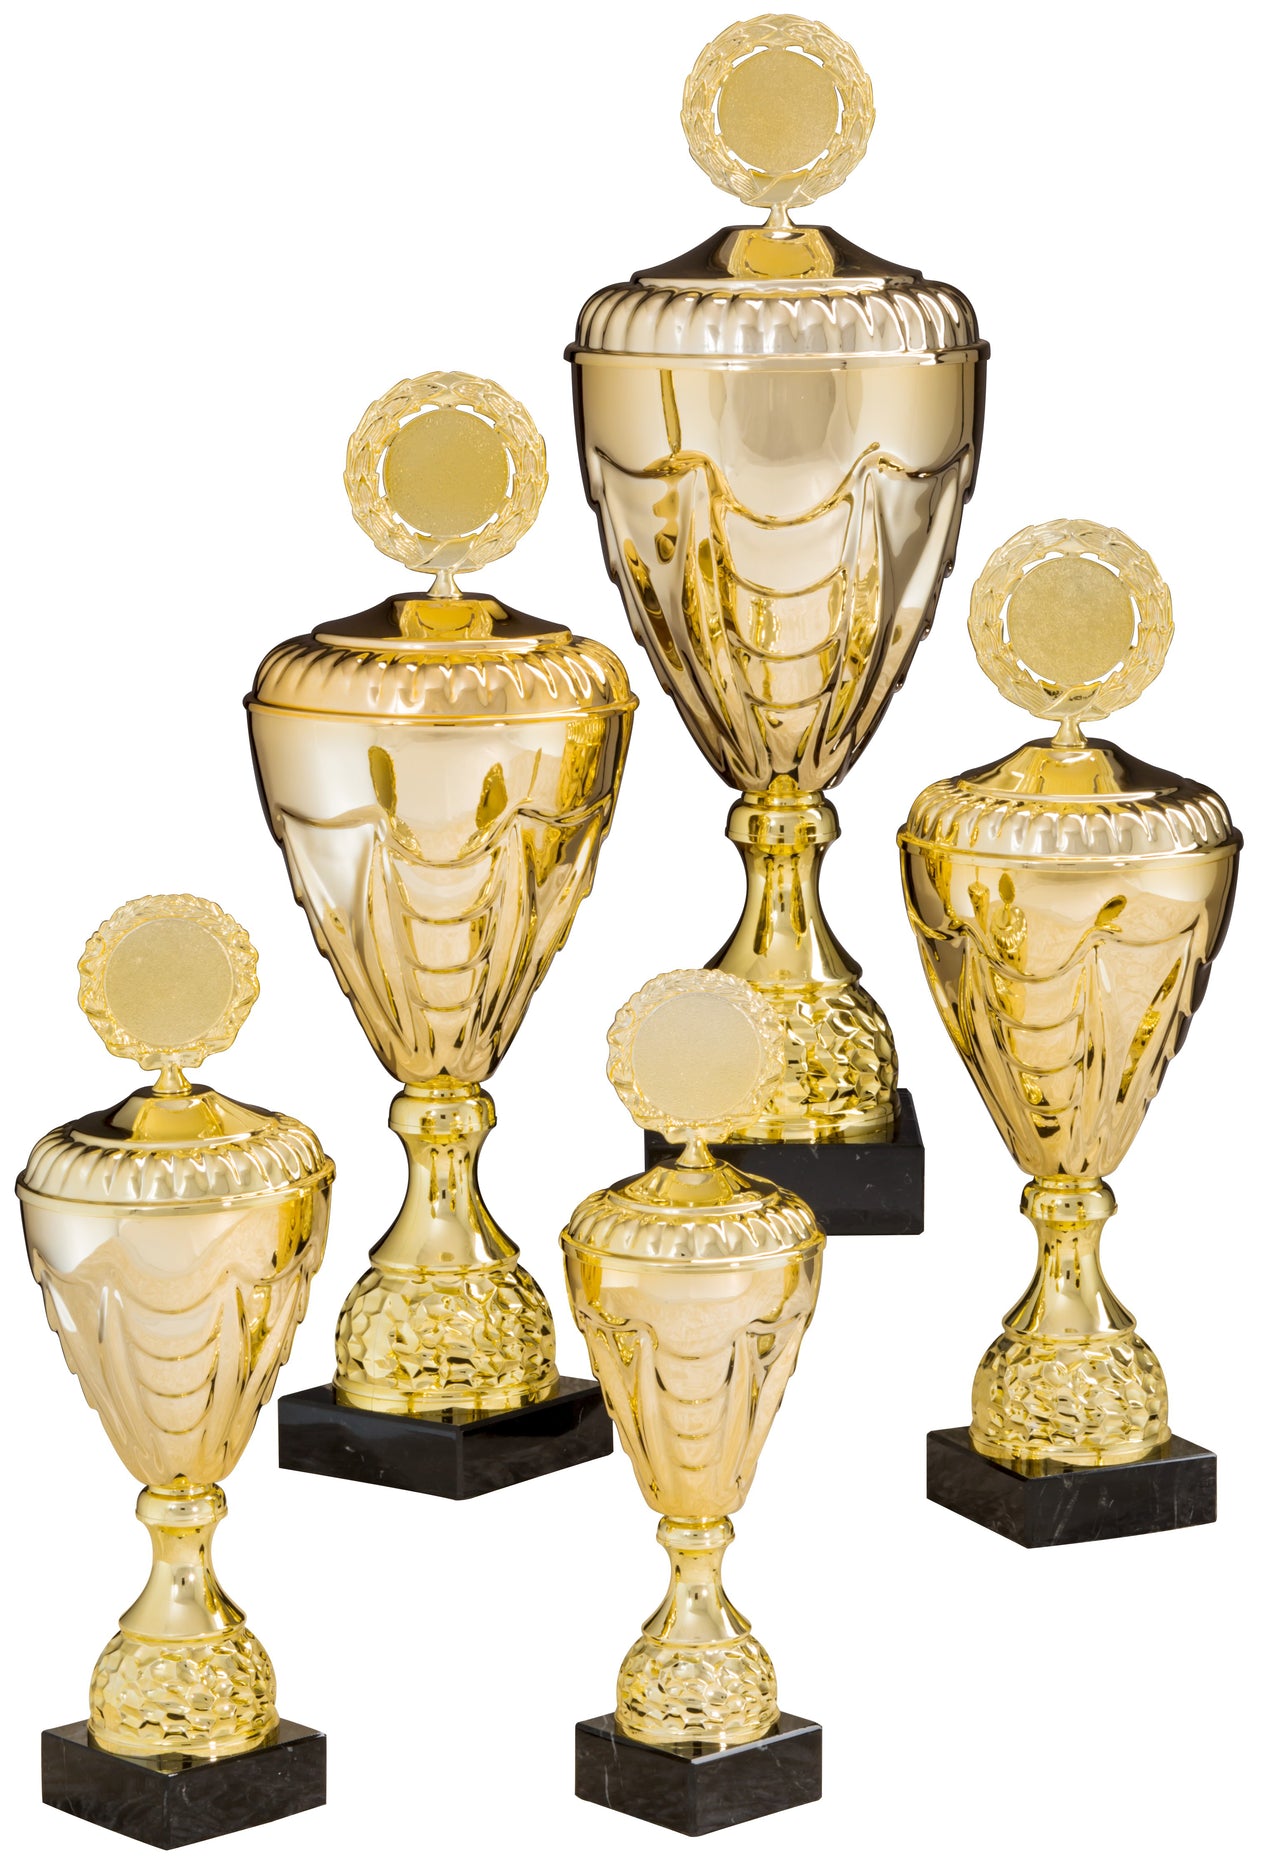 Fünf goldene Trophäen mit schwarzem Sockel, unterschiedlicher Größe, in einer Gruppenausstellung angeordnet. Jeder Pokale Kirchheim unter Teck 5-er Pokalserie 275 mm – 444 mm PK757870-5-E50 ist ein strahlendes Erinnerungsstück an Leistung und Auszeichnung.